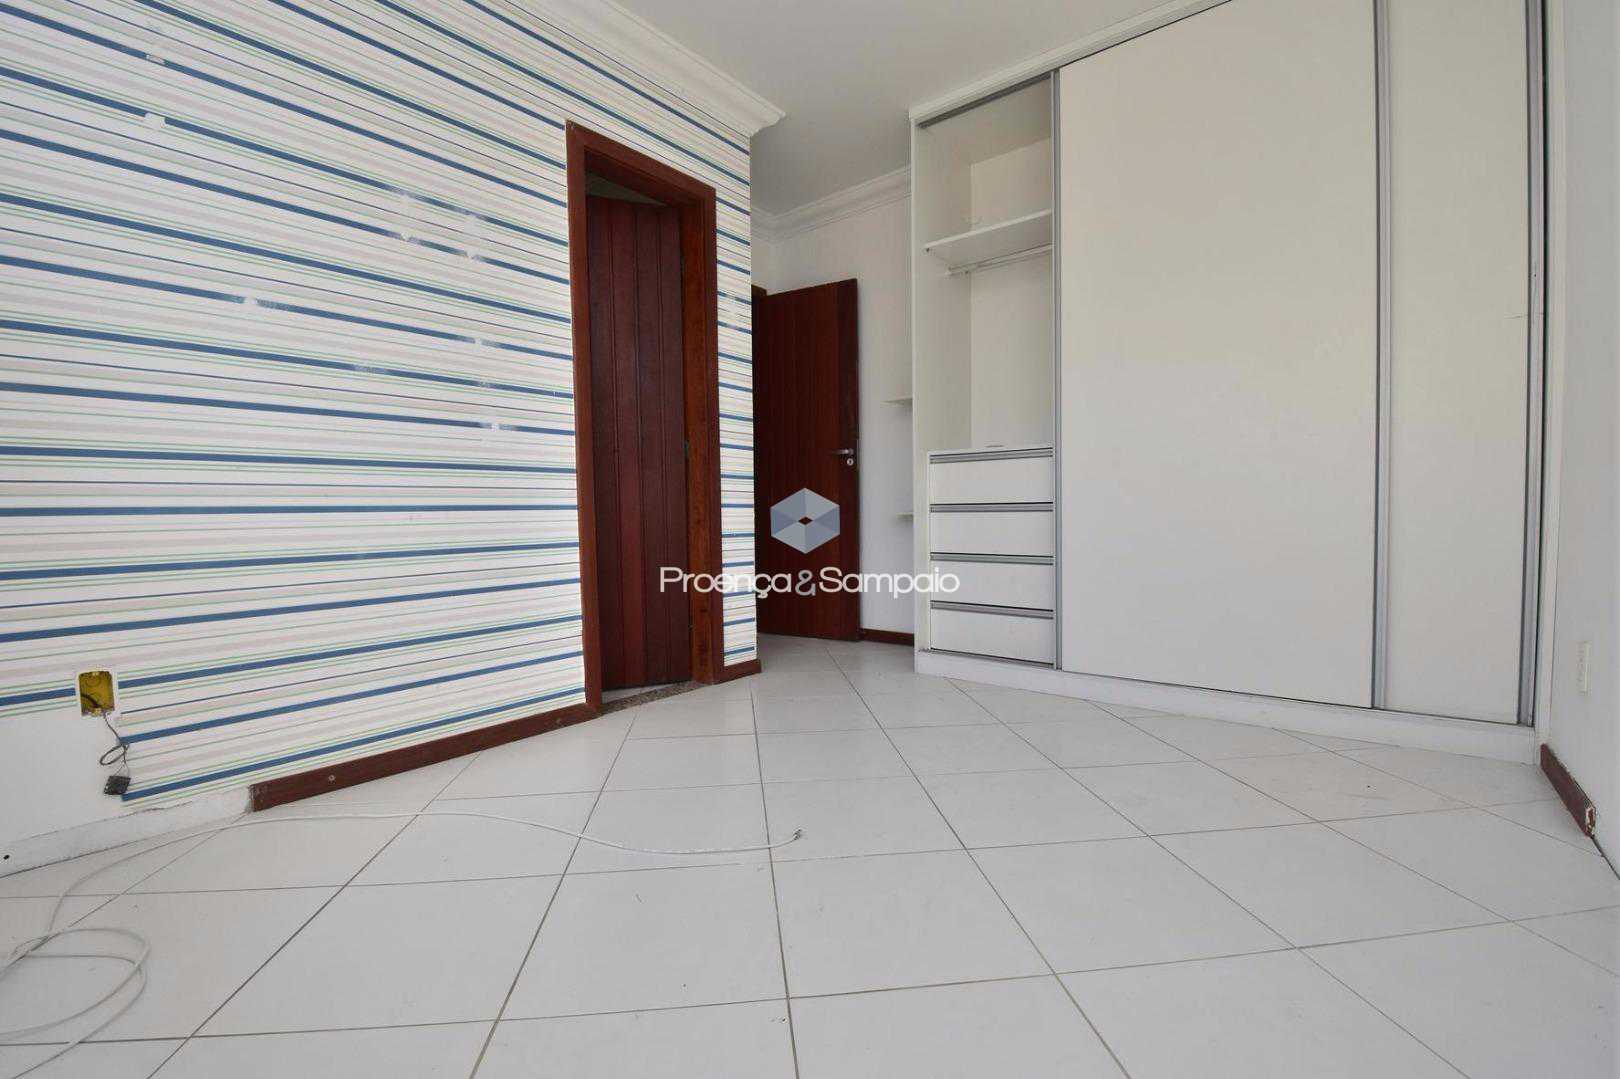 FOTO15 - Casa em Condomínio 4 quartos à venda Lauro de Freitas,BA - R$ 680.000 - PSCN40012 - 17